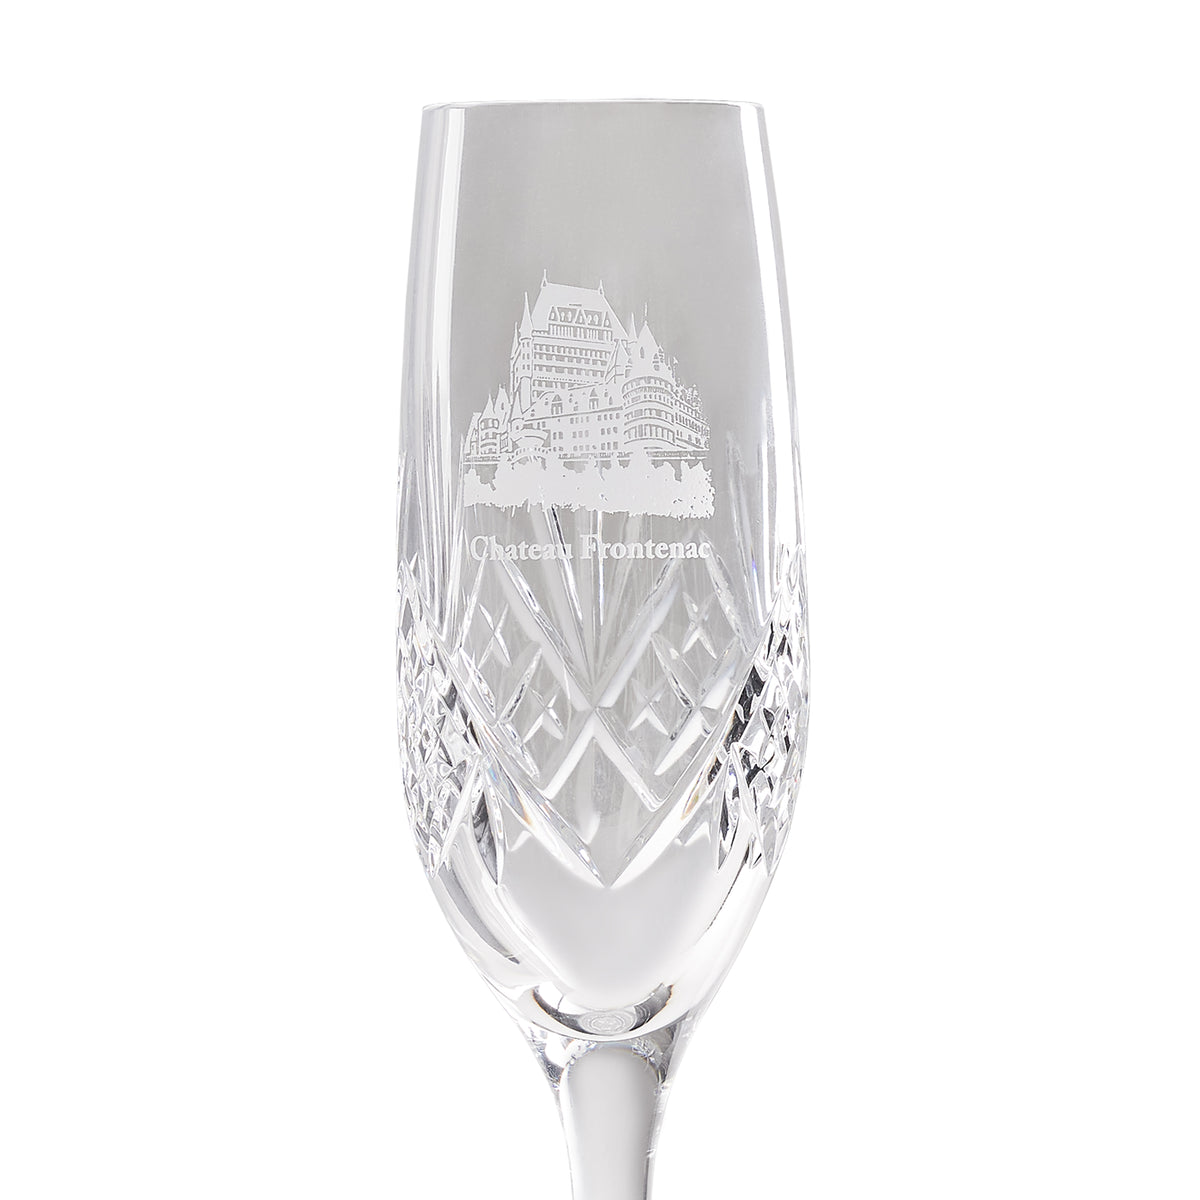 Le Chateau Frontenac Champagne Flutes (set of 2)